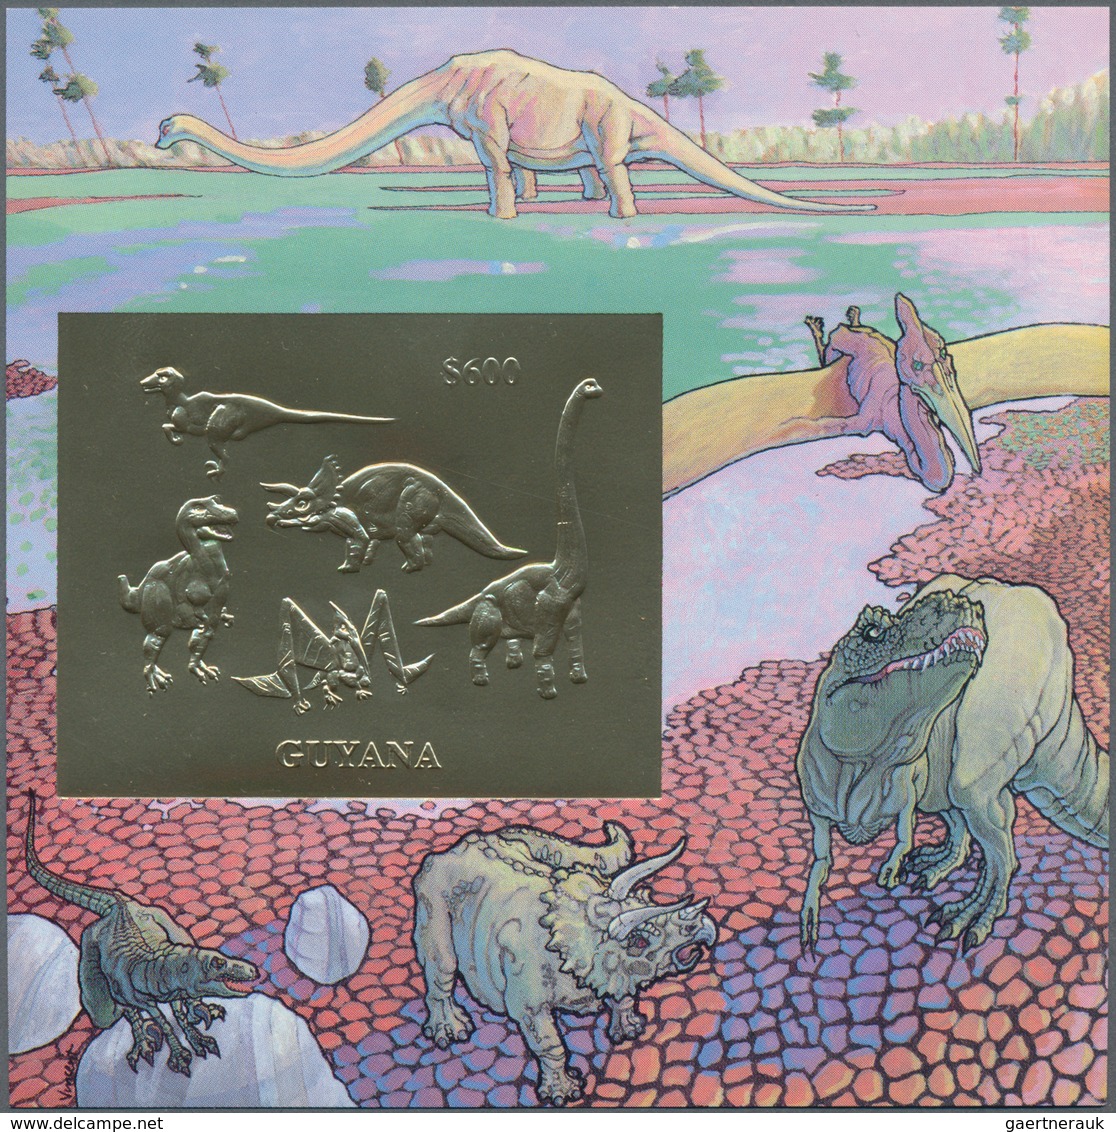 Thematik: Tiere-Dinosaurier / Animals-dinosaur: 1993/1994, Guyana, Dinosaurs (Gold+Silver Issues), S - Vor- U. Frühgeschichte